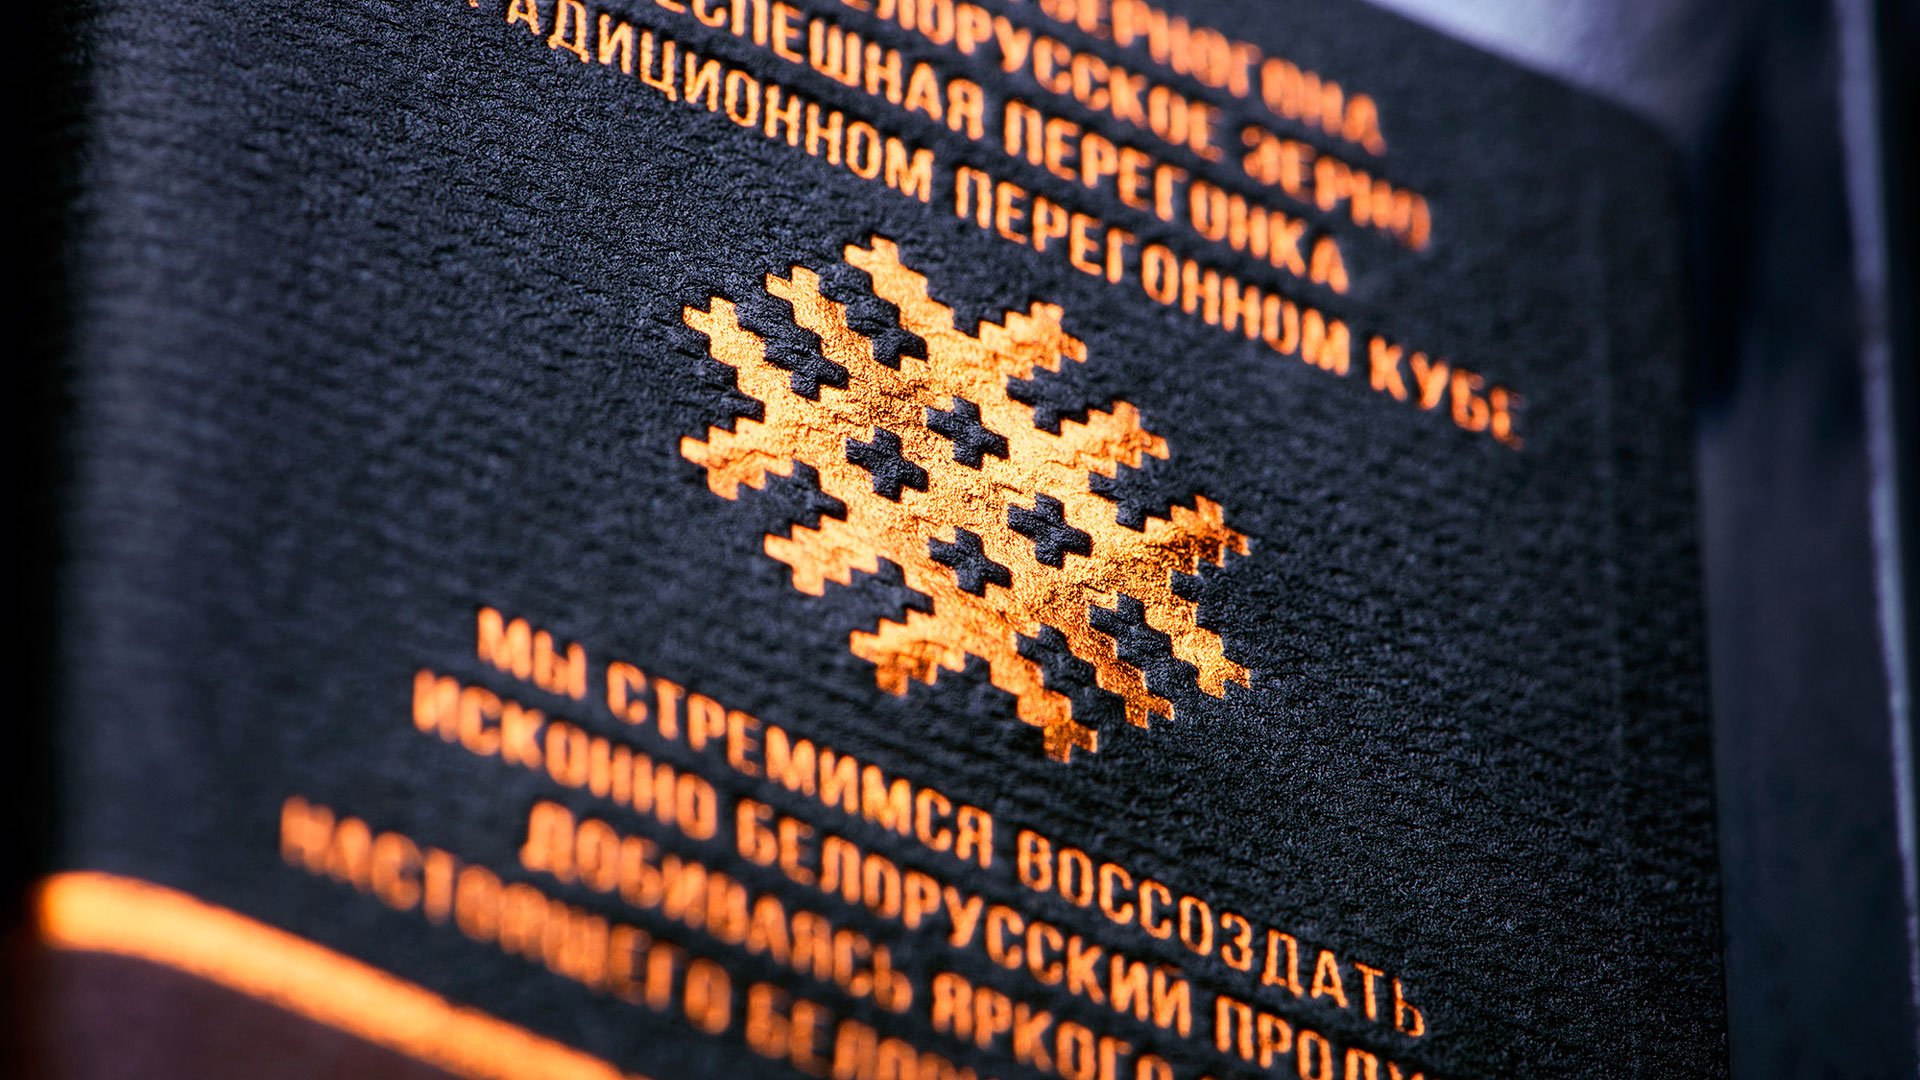 Дизайн этикетки, Беларусь, ZERNOGON, Armbrand